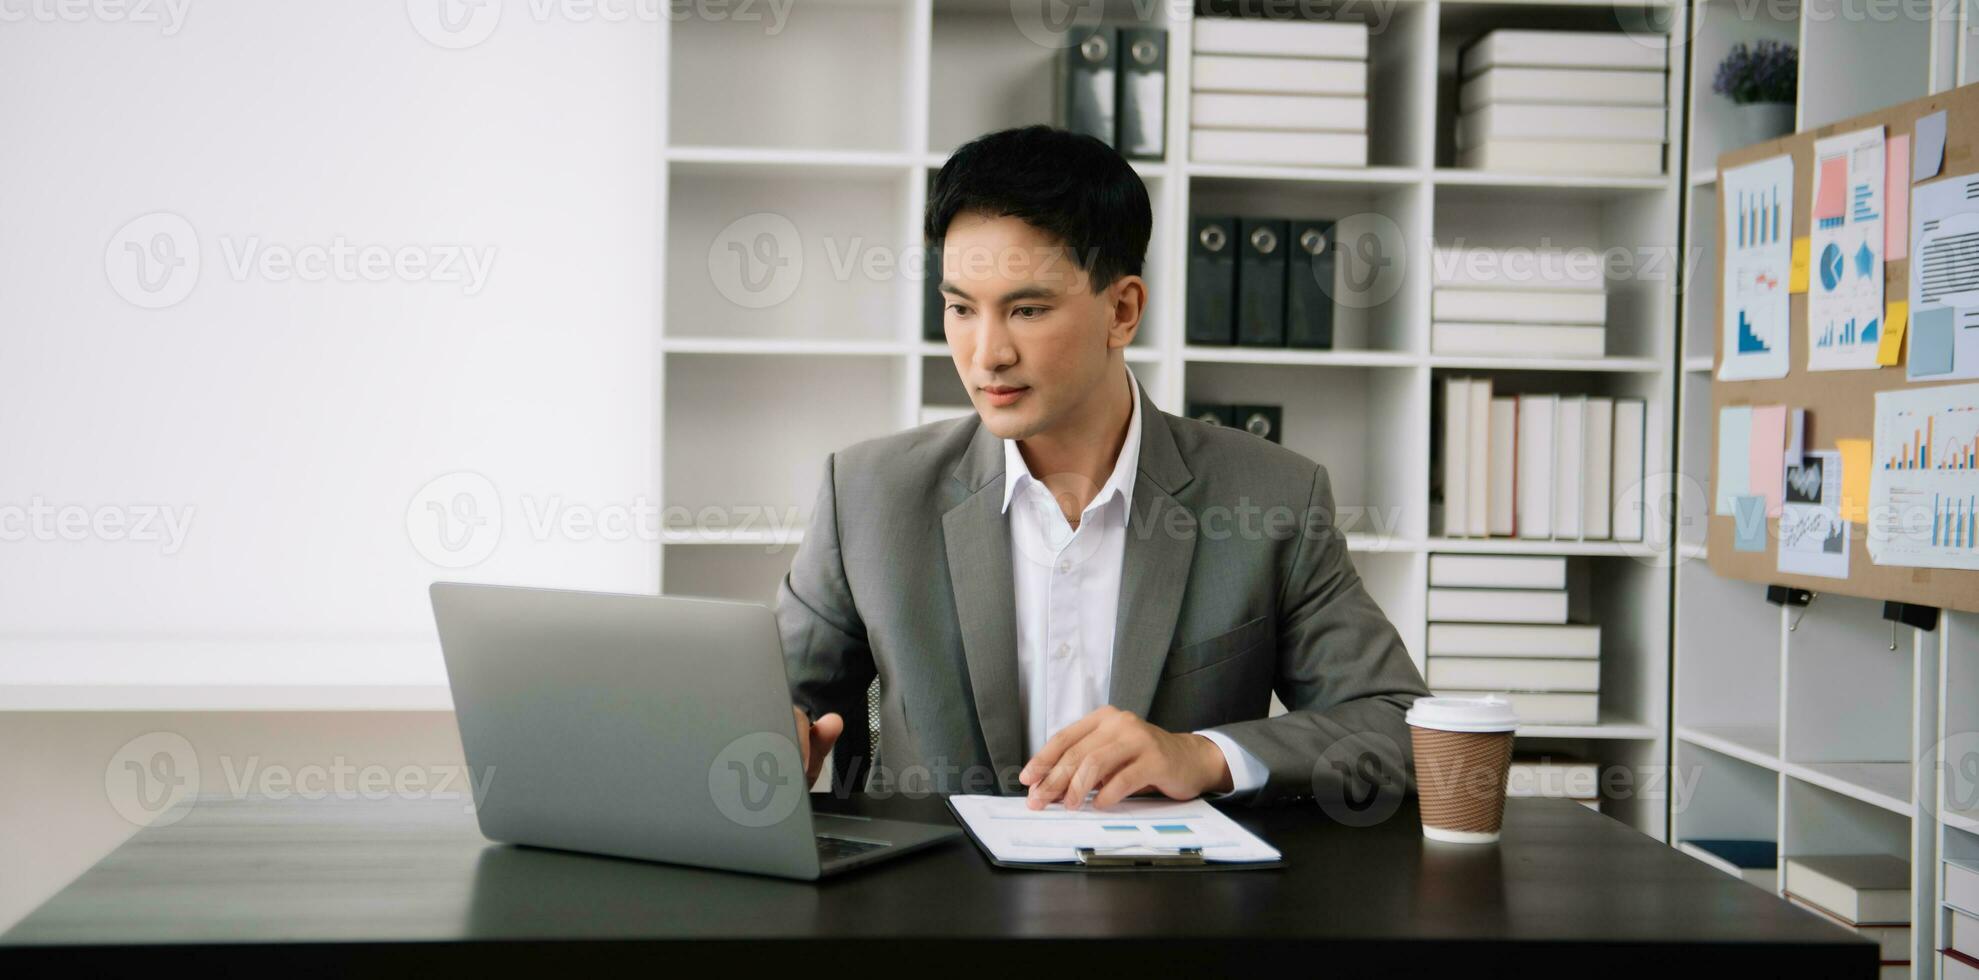 zelfverzekerd Aziatisch Mens met een glimlach staand Holding kladblok en tablet Bij de modern kantoor. foto